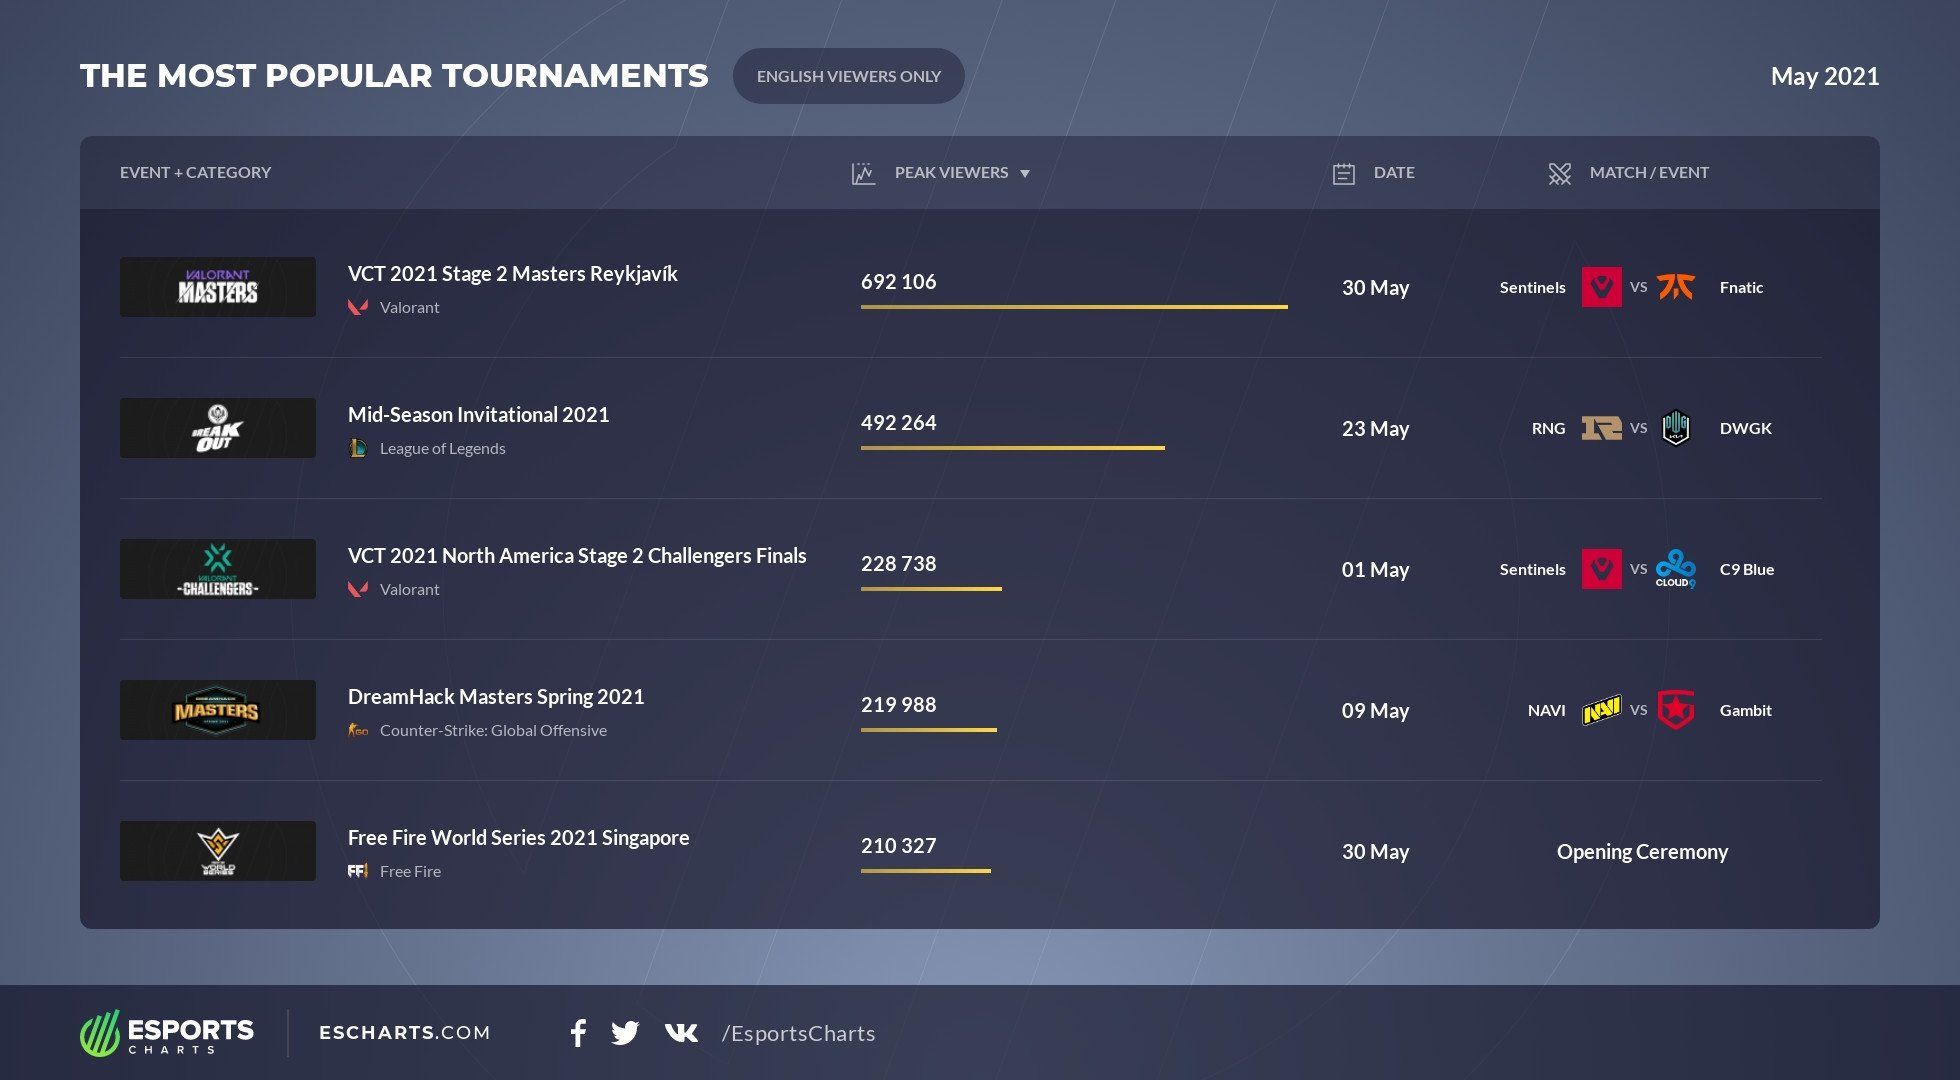 Самые популярные турниры среди англоязычных зрителей в мае.
Источник: Esports Charts